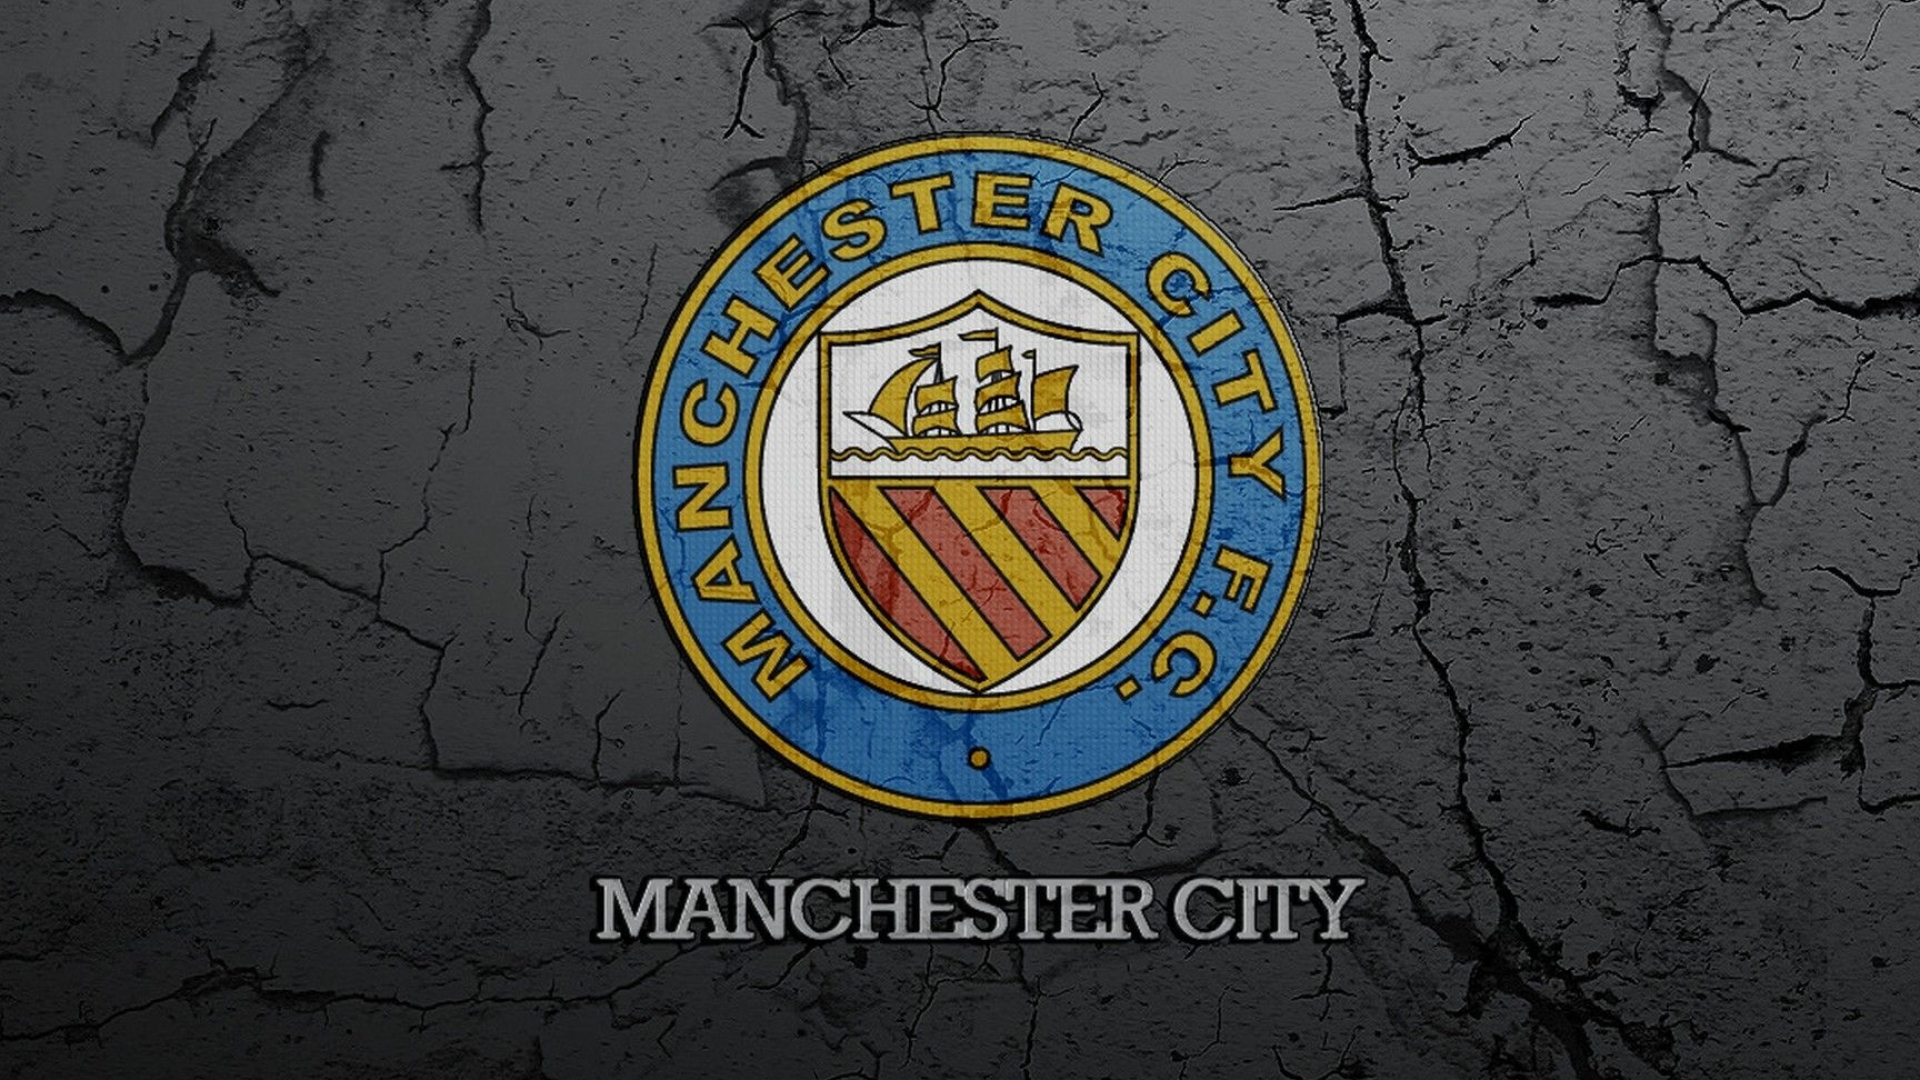 HD backgrounds, Manchester City, Football wallpaper, Cityscape, 1920x1080 Full HD Desktop